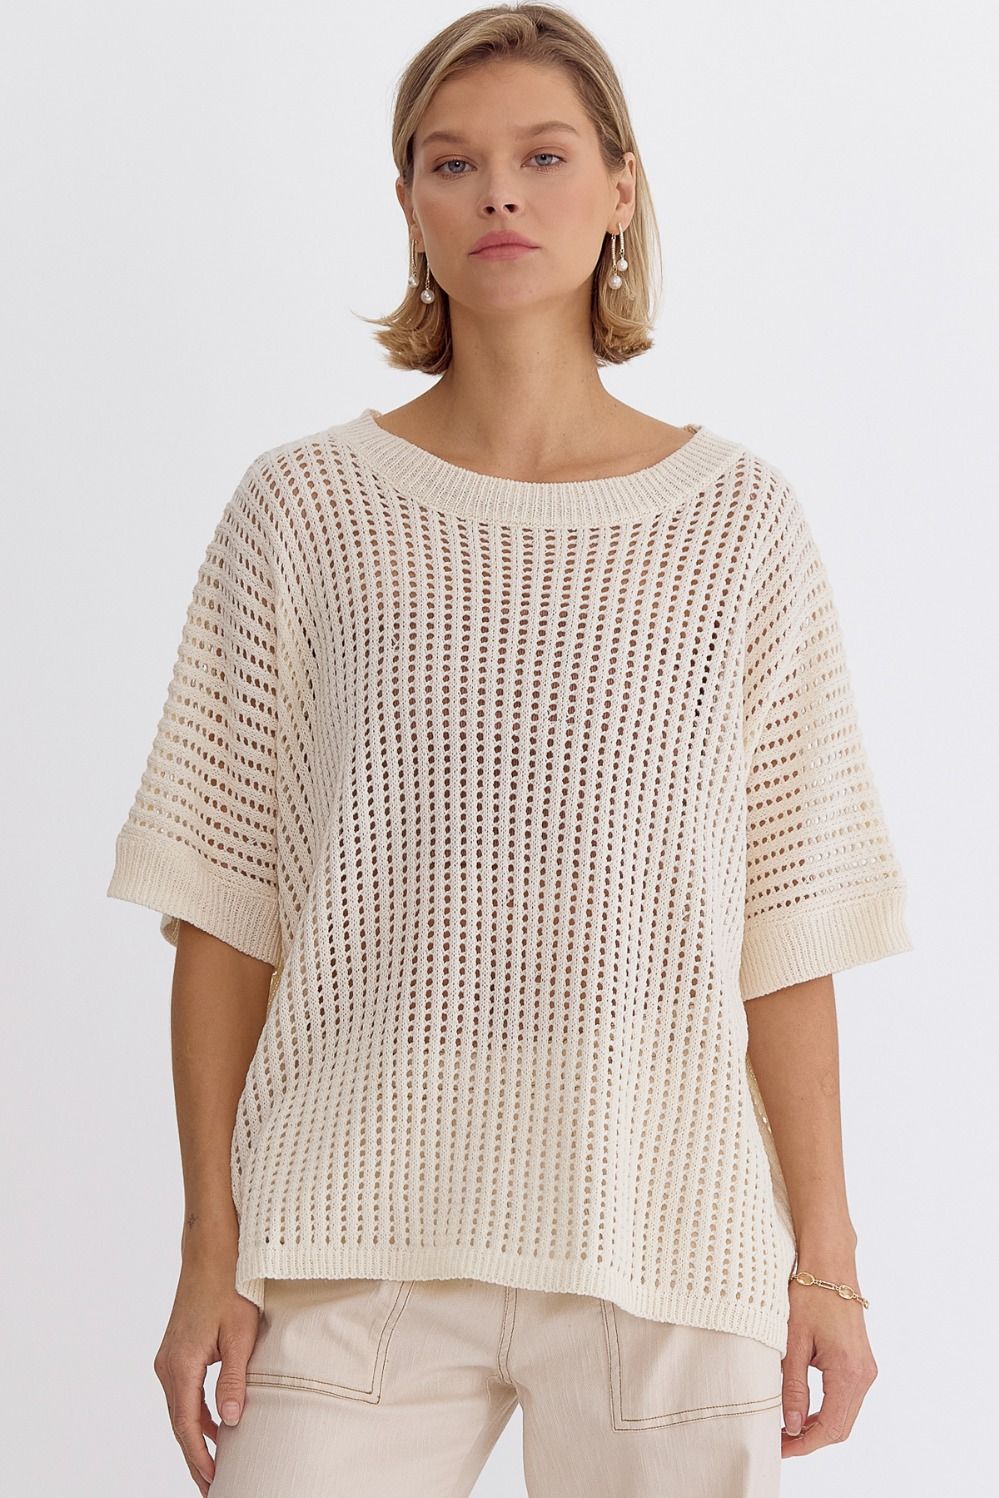 Buy Women's White Crochet Tops Online